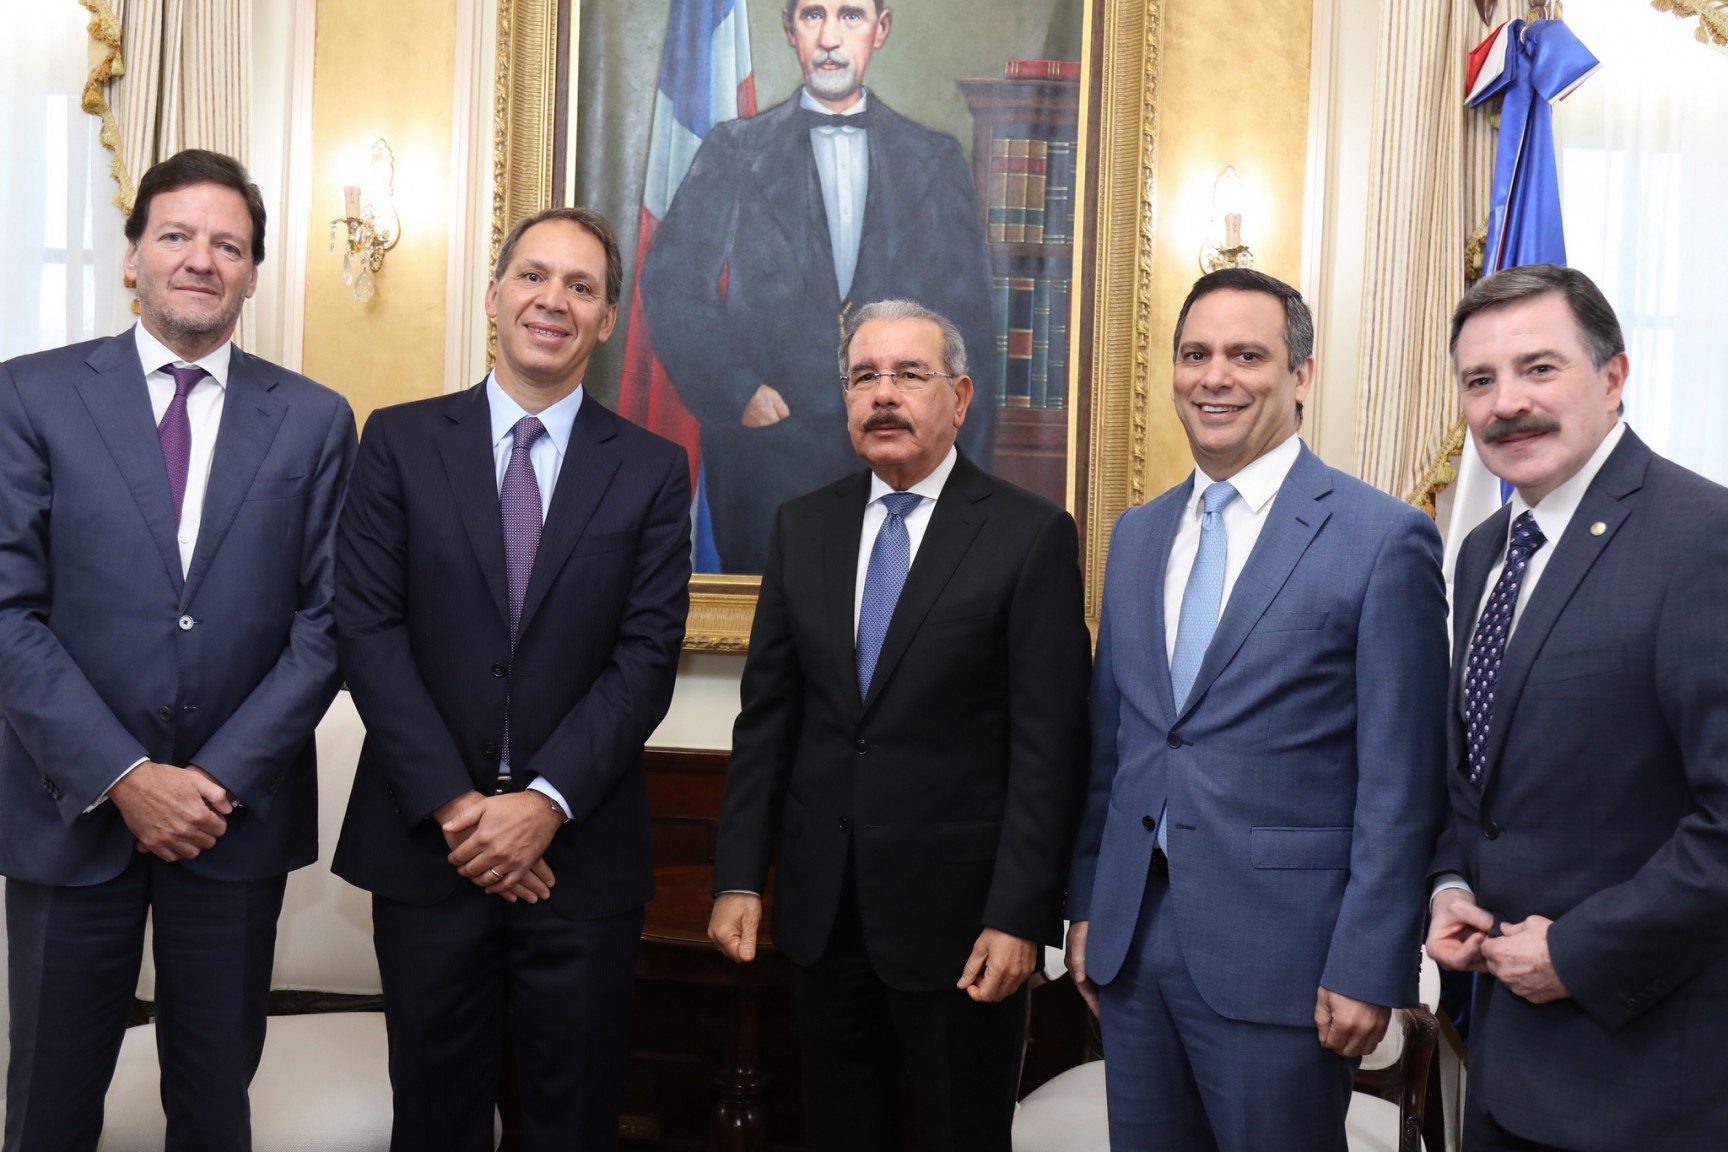 REPÚBLICA DOMINICANA: Claro invertirá más de 1,000 millones de dólares en los próximos tres años; CEO de América Móvil visita presidente Danilo Medina